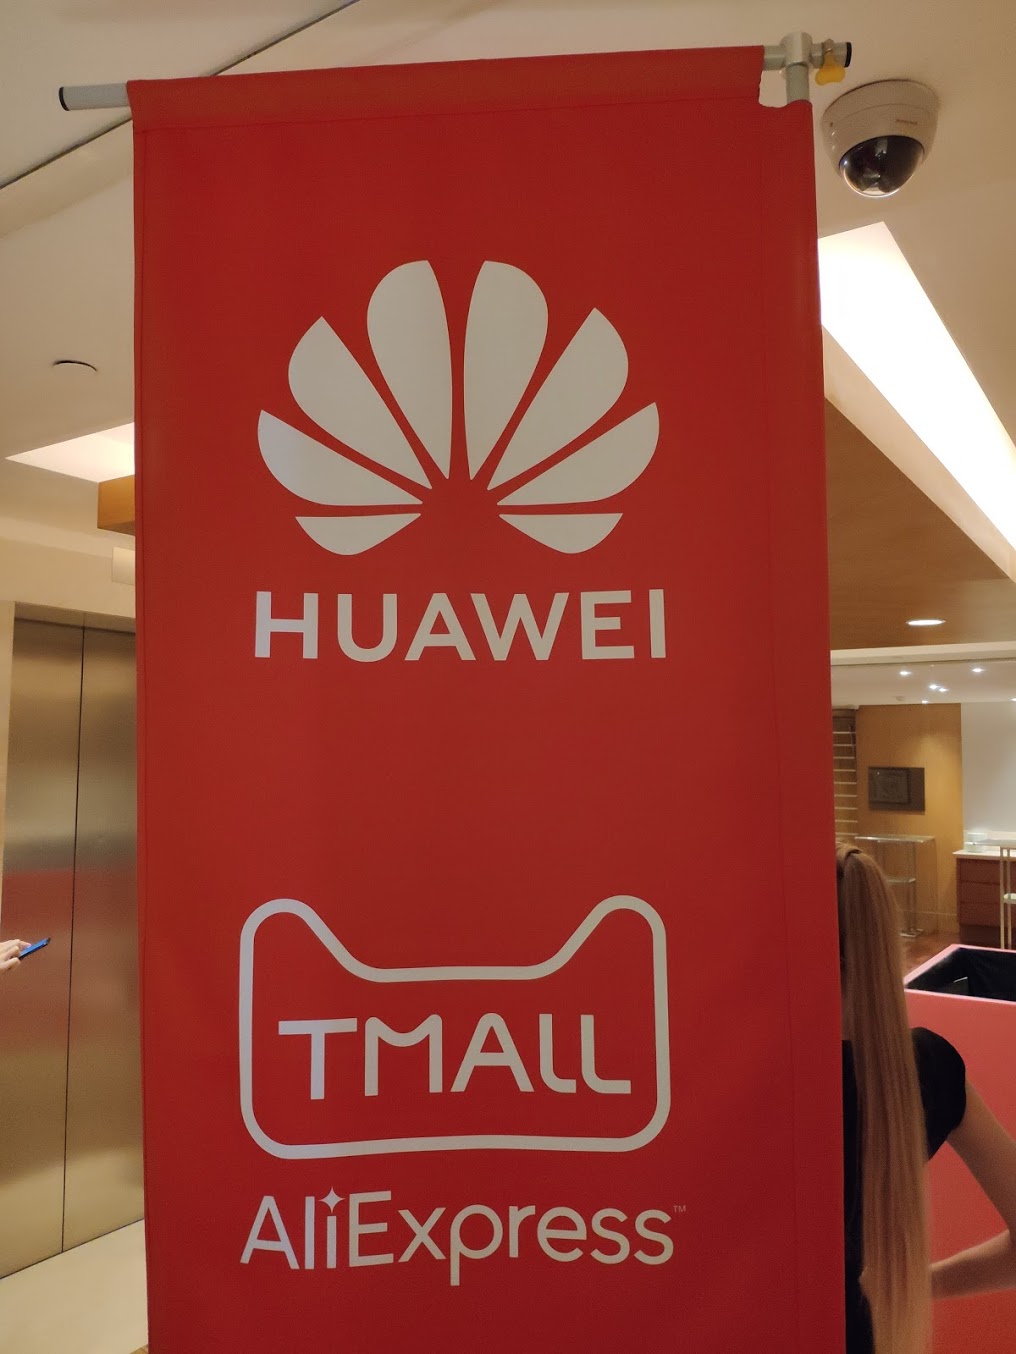 Honor пришла на Aliexpress Tmall в след за Huawei